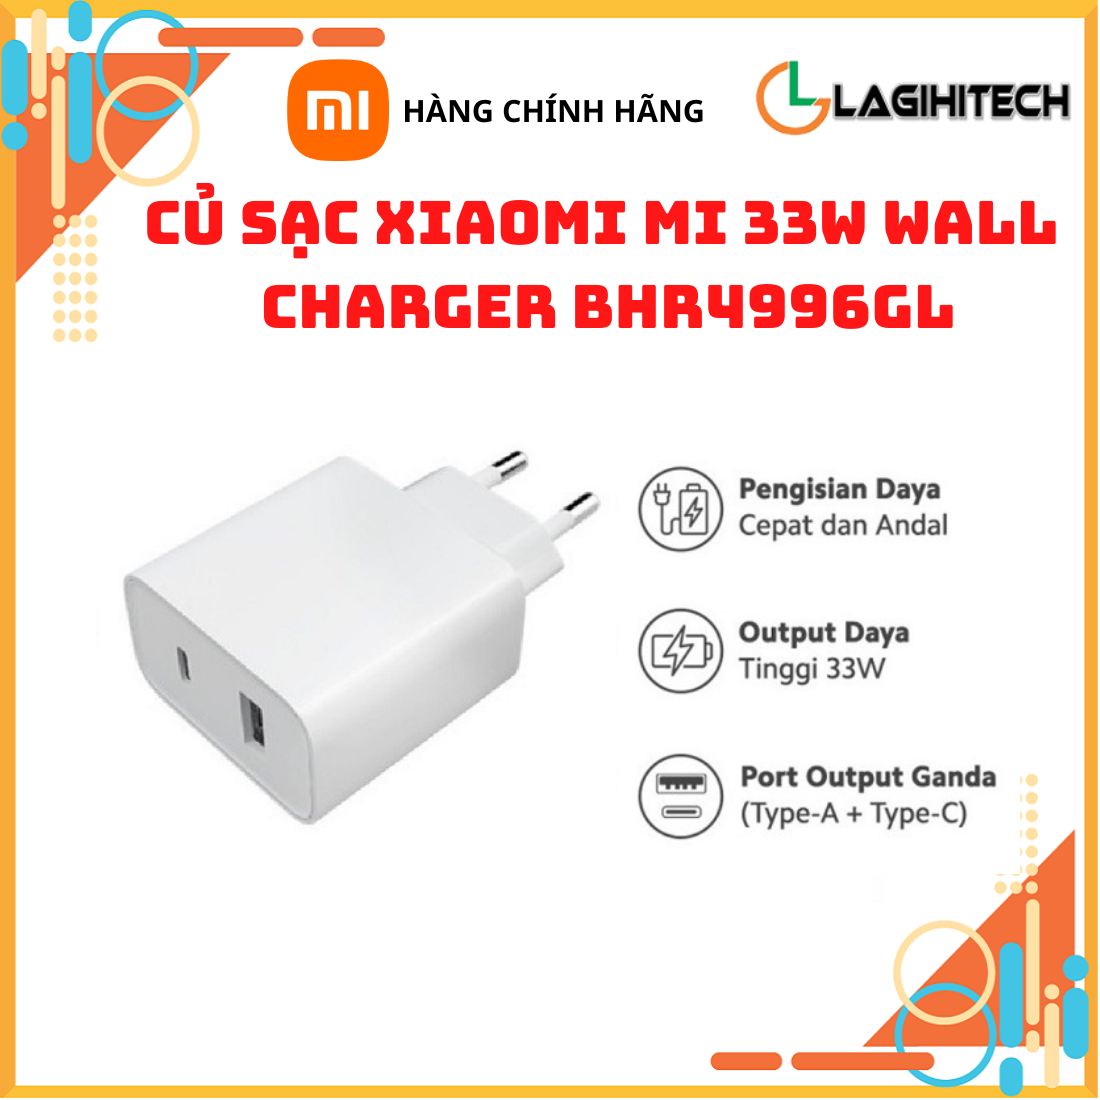 Cốc sạc Xiaomi Mi 33W Wall Charger Type-C + Type-A BHR4996GL MDY-11-EX - Hàng chính hãng